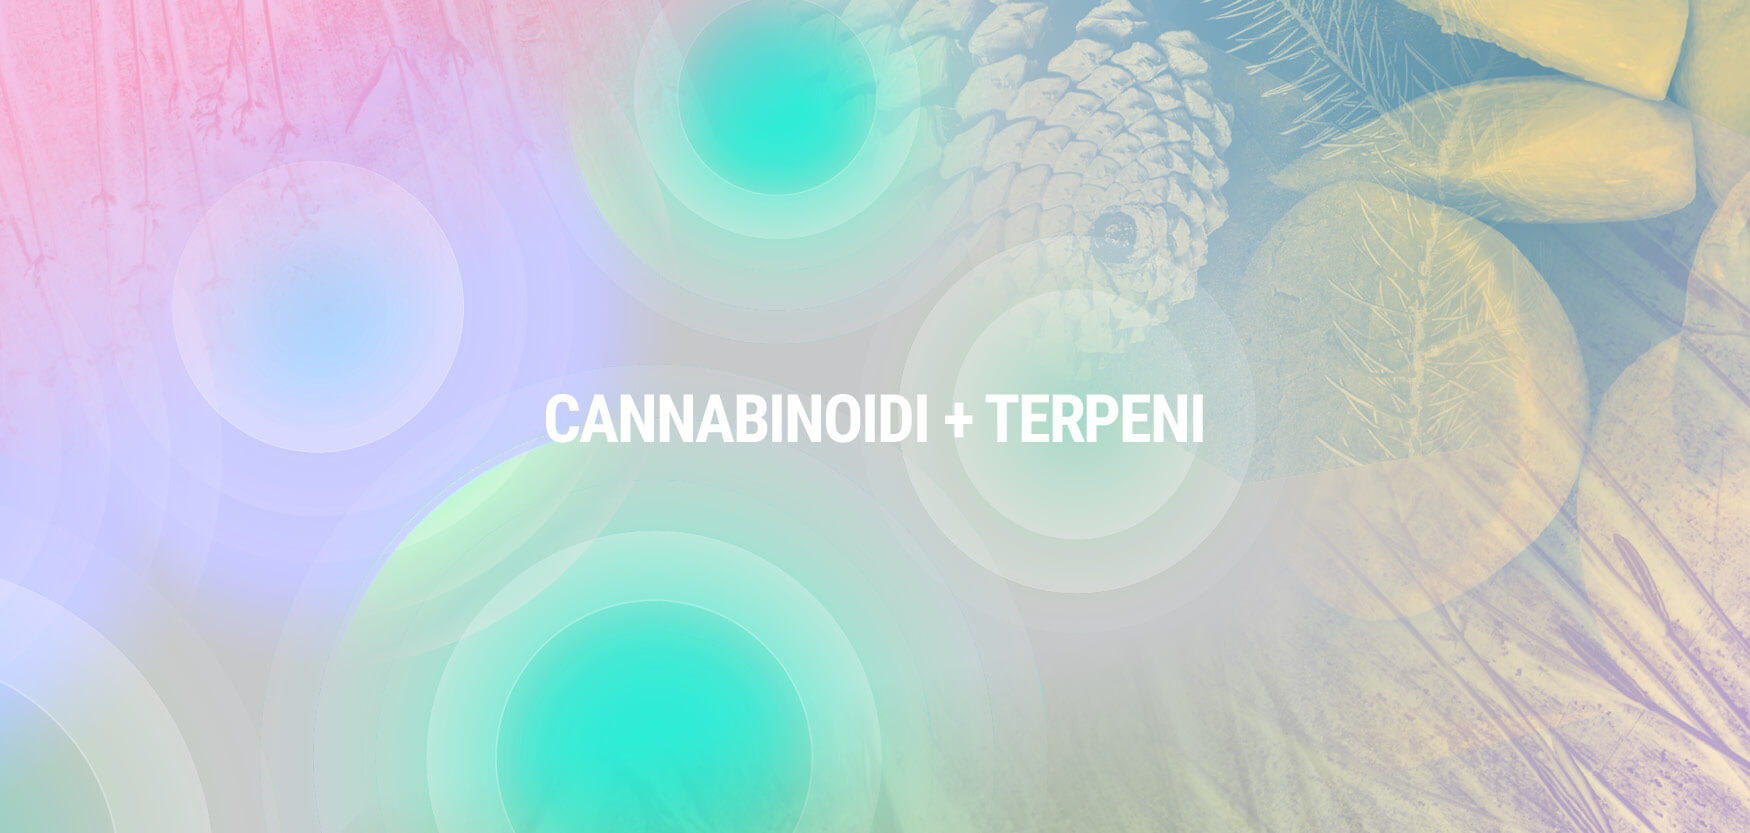 Cannabinoidi + Terpeni